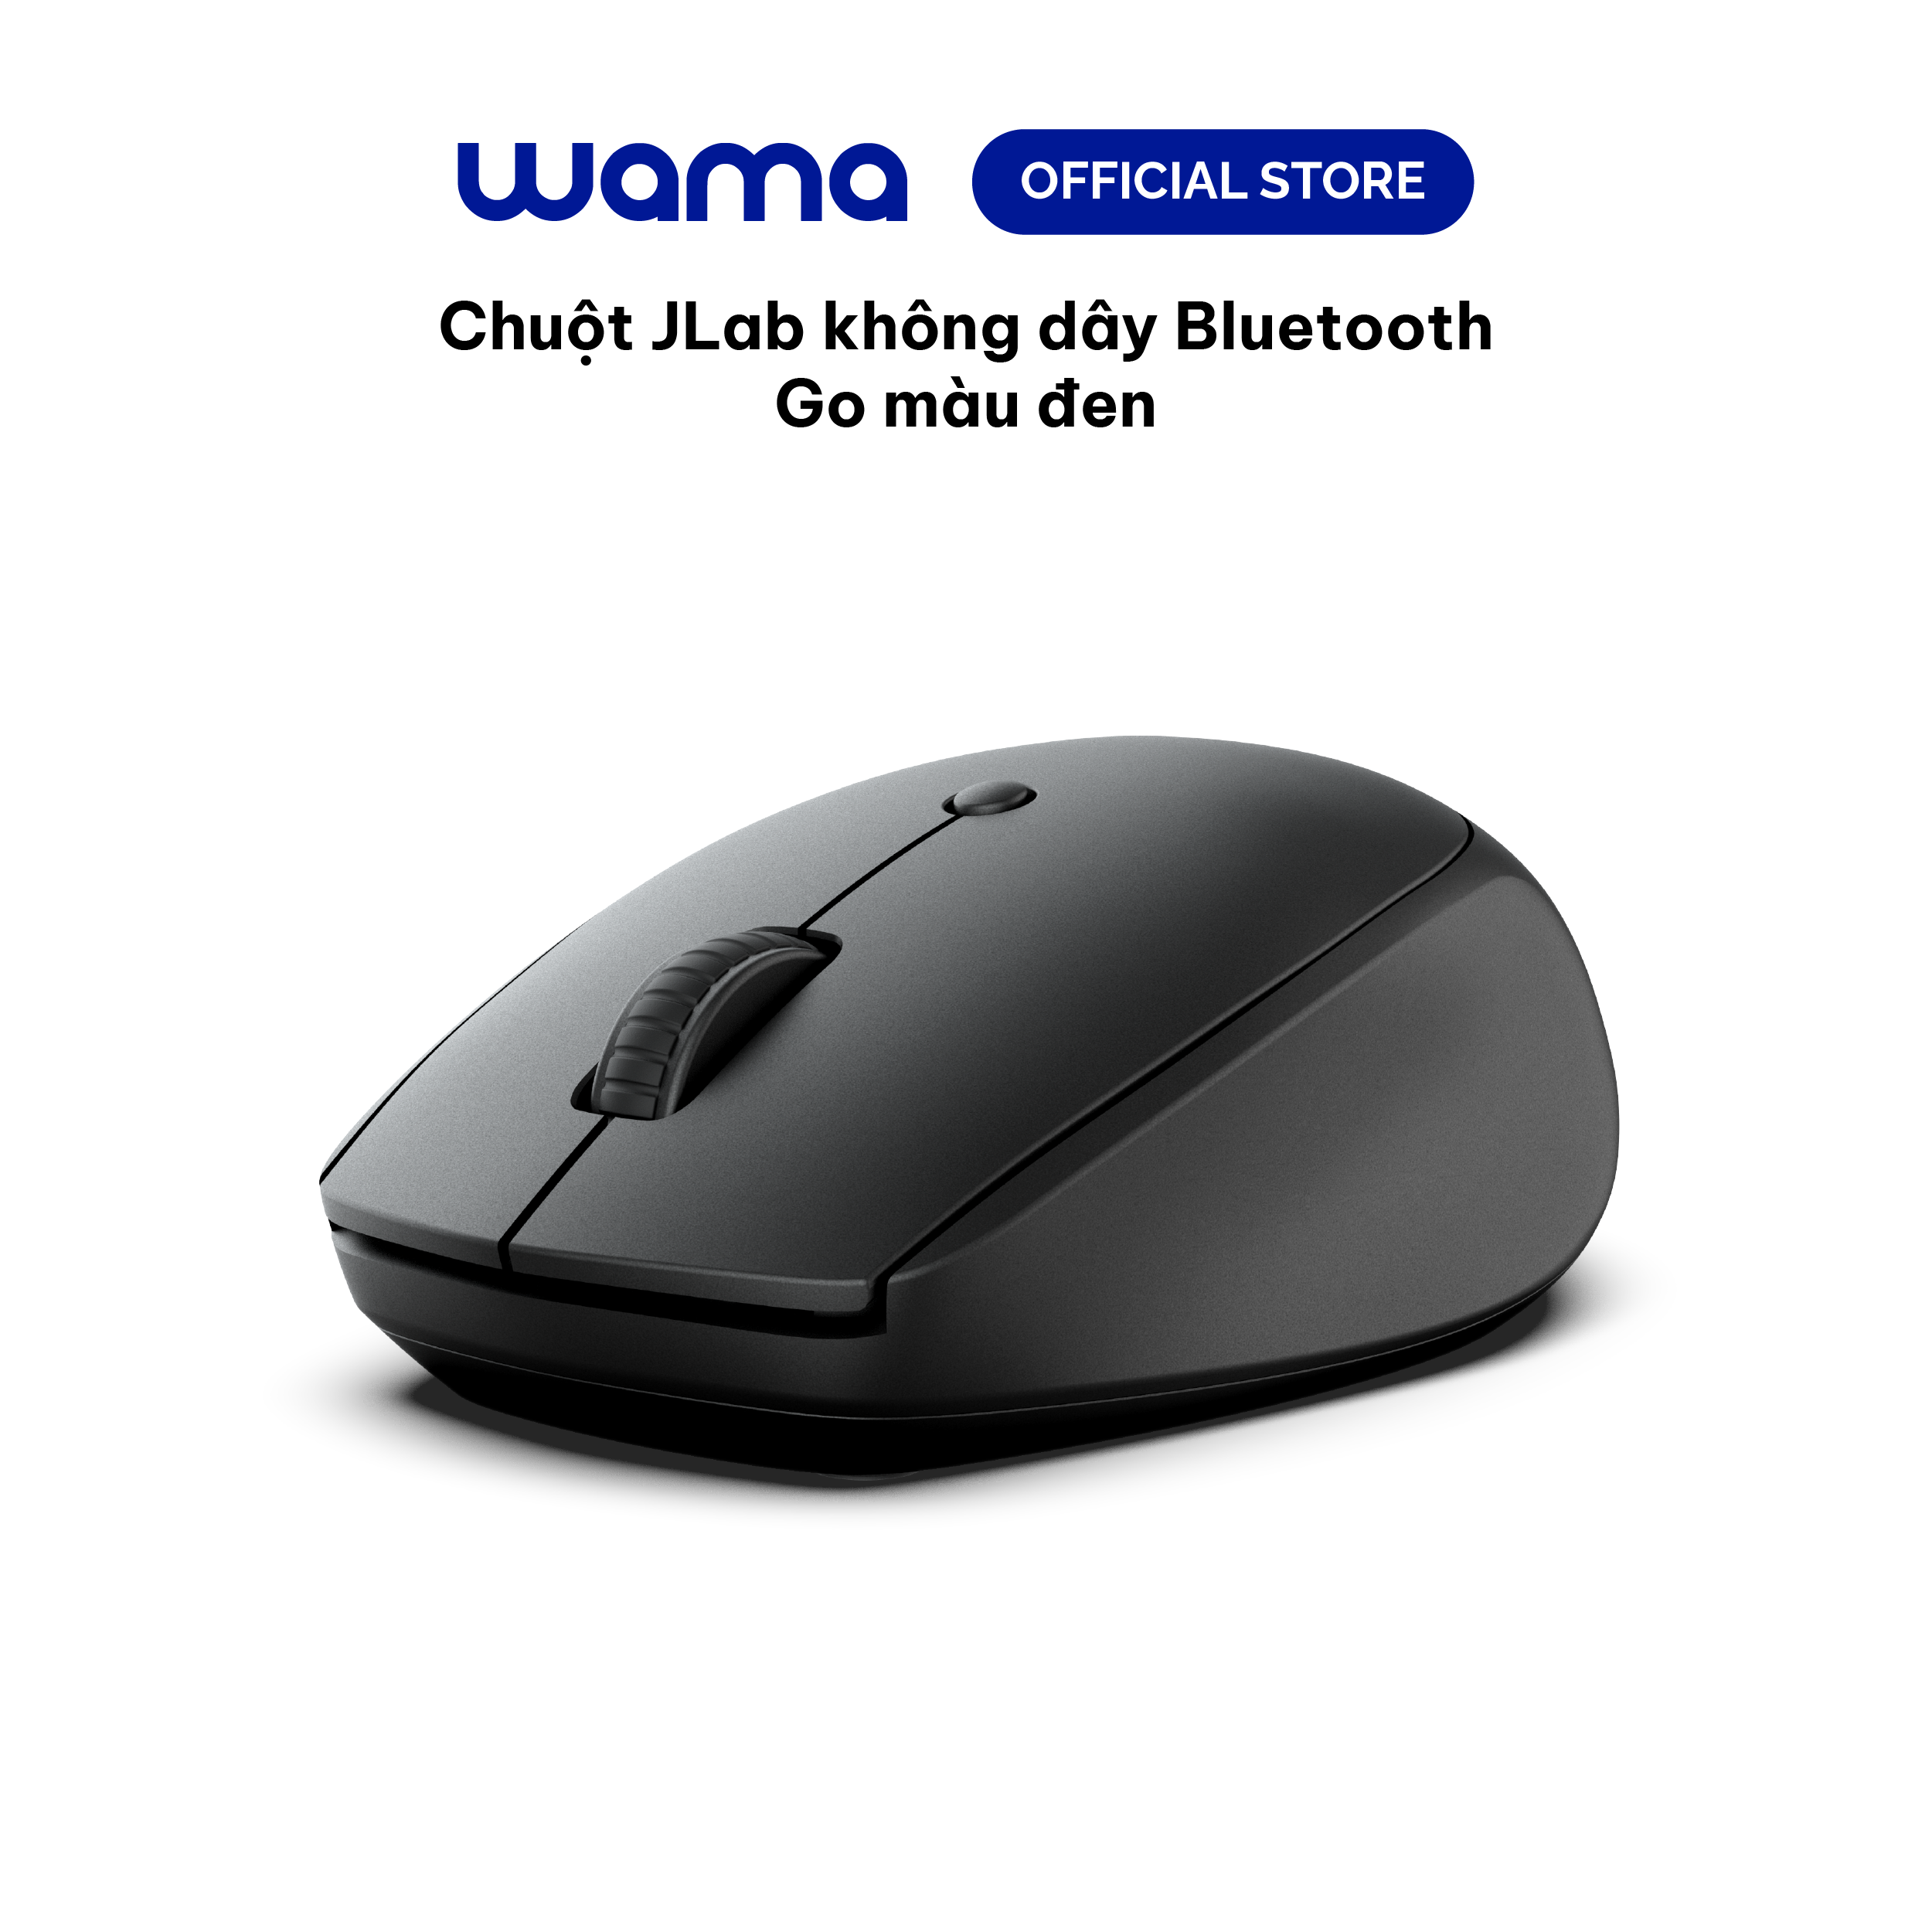 Chuột không dây JLab Go màu đen Bluetooth 5.0 nút bấm yên tĩnh, kết nối 3 thiết bị, pin AA, DPI 1600, Bảo hành 2 năm - Hàng chính hãng